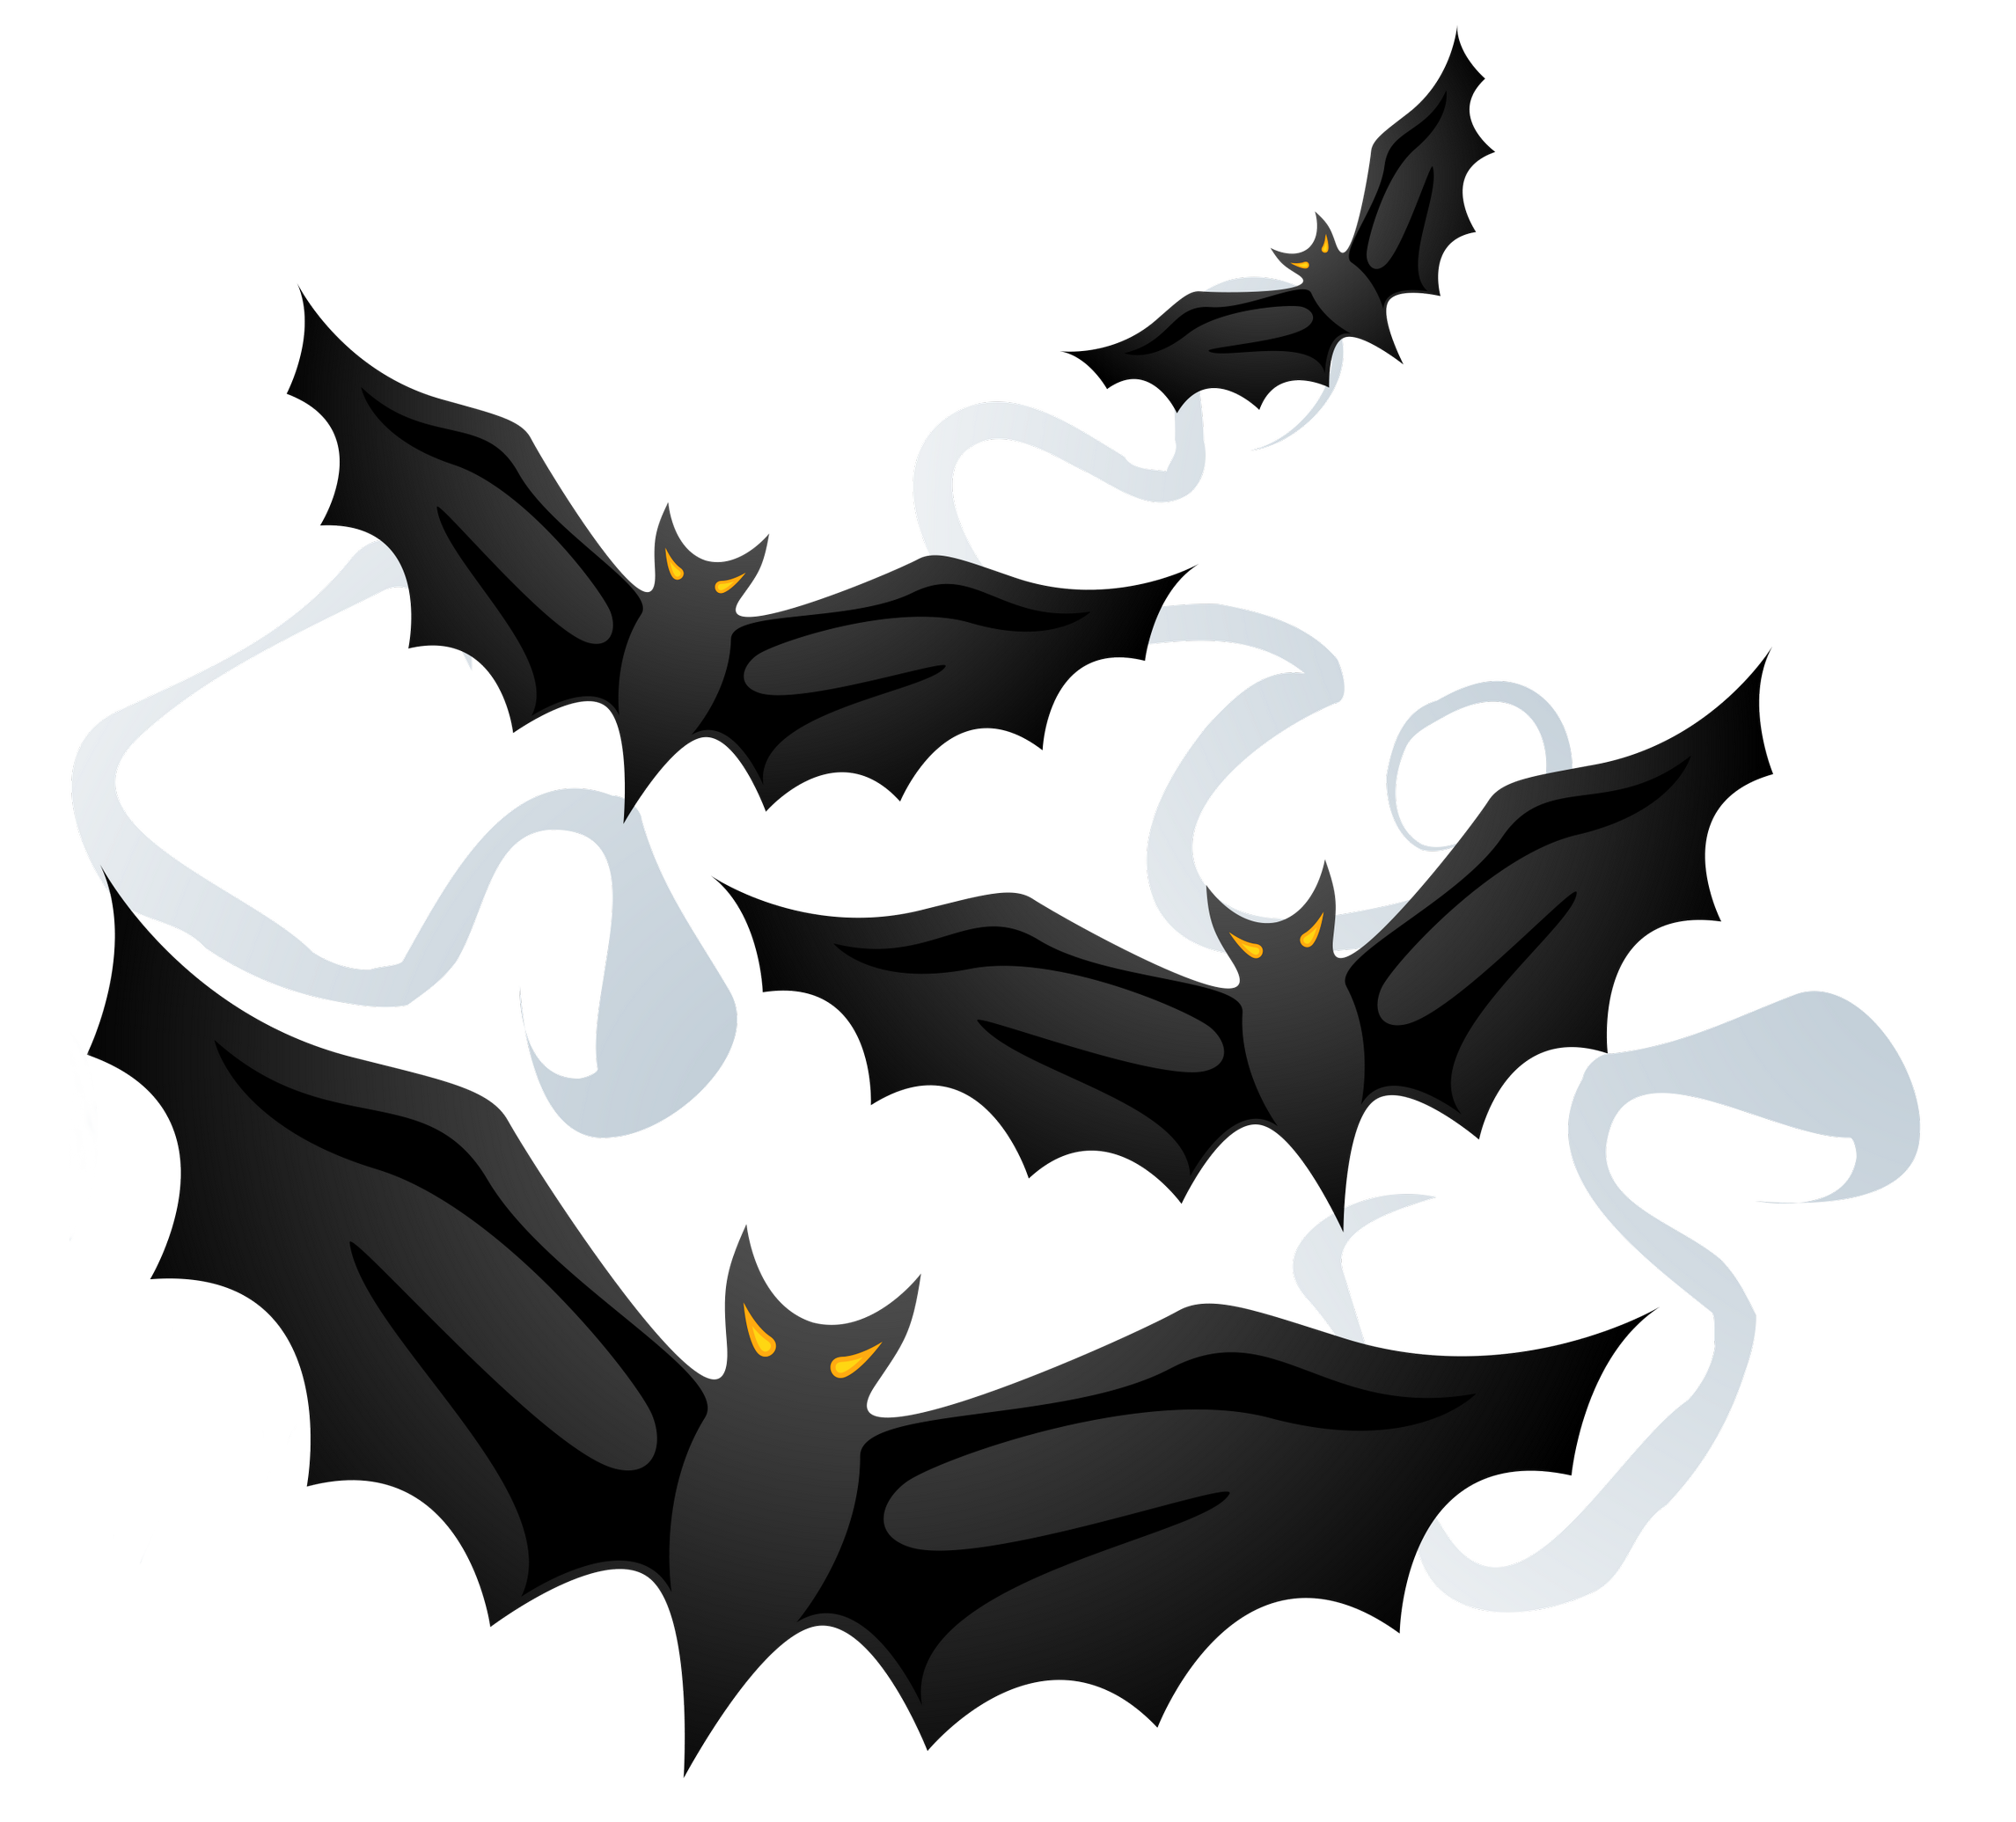 Halloween creepy bats.